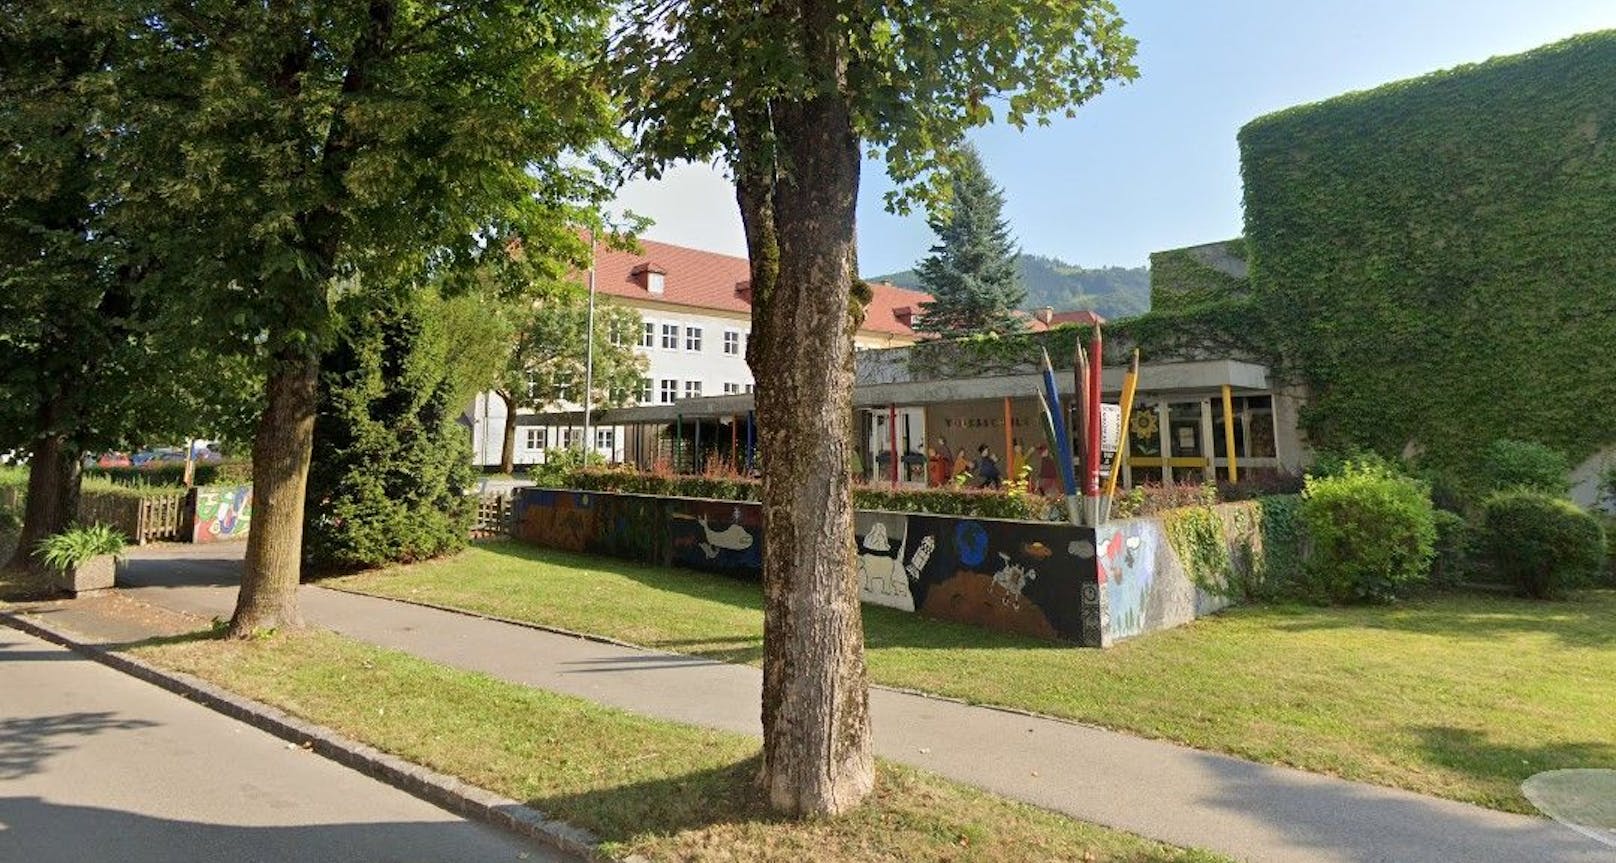 In der Volksschule in Kirchdorf an der Krems gibt es mehrere Corona-Fälle. Der Unterricht fällt eine Woche aus.